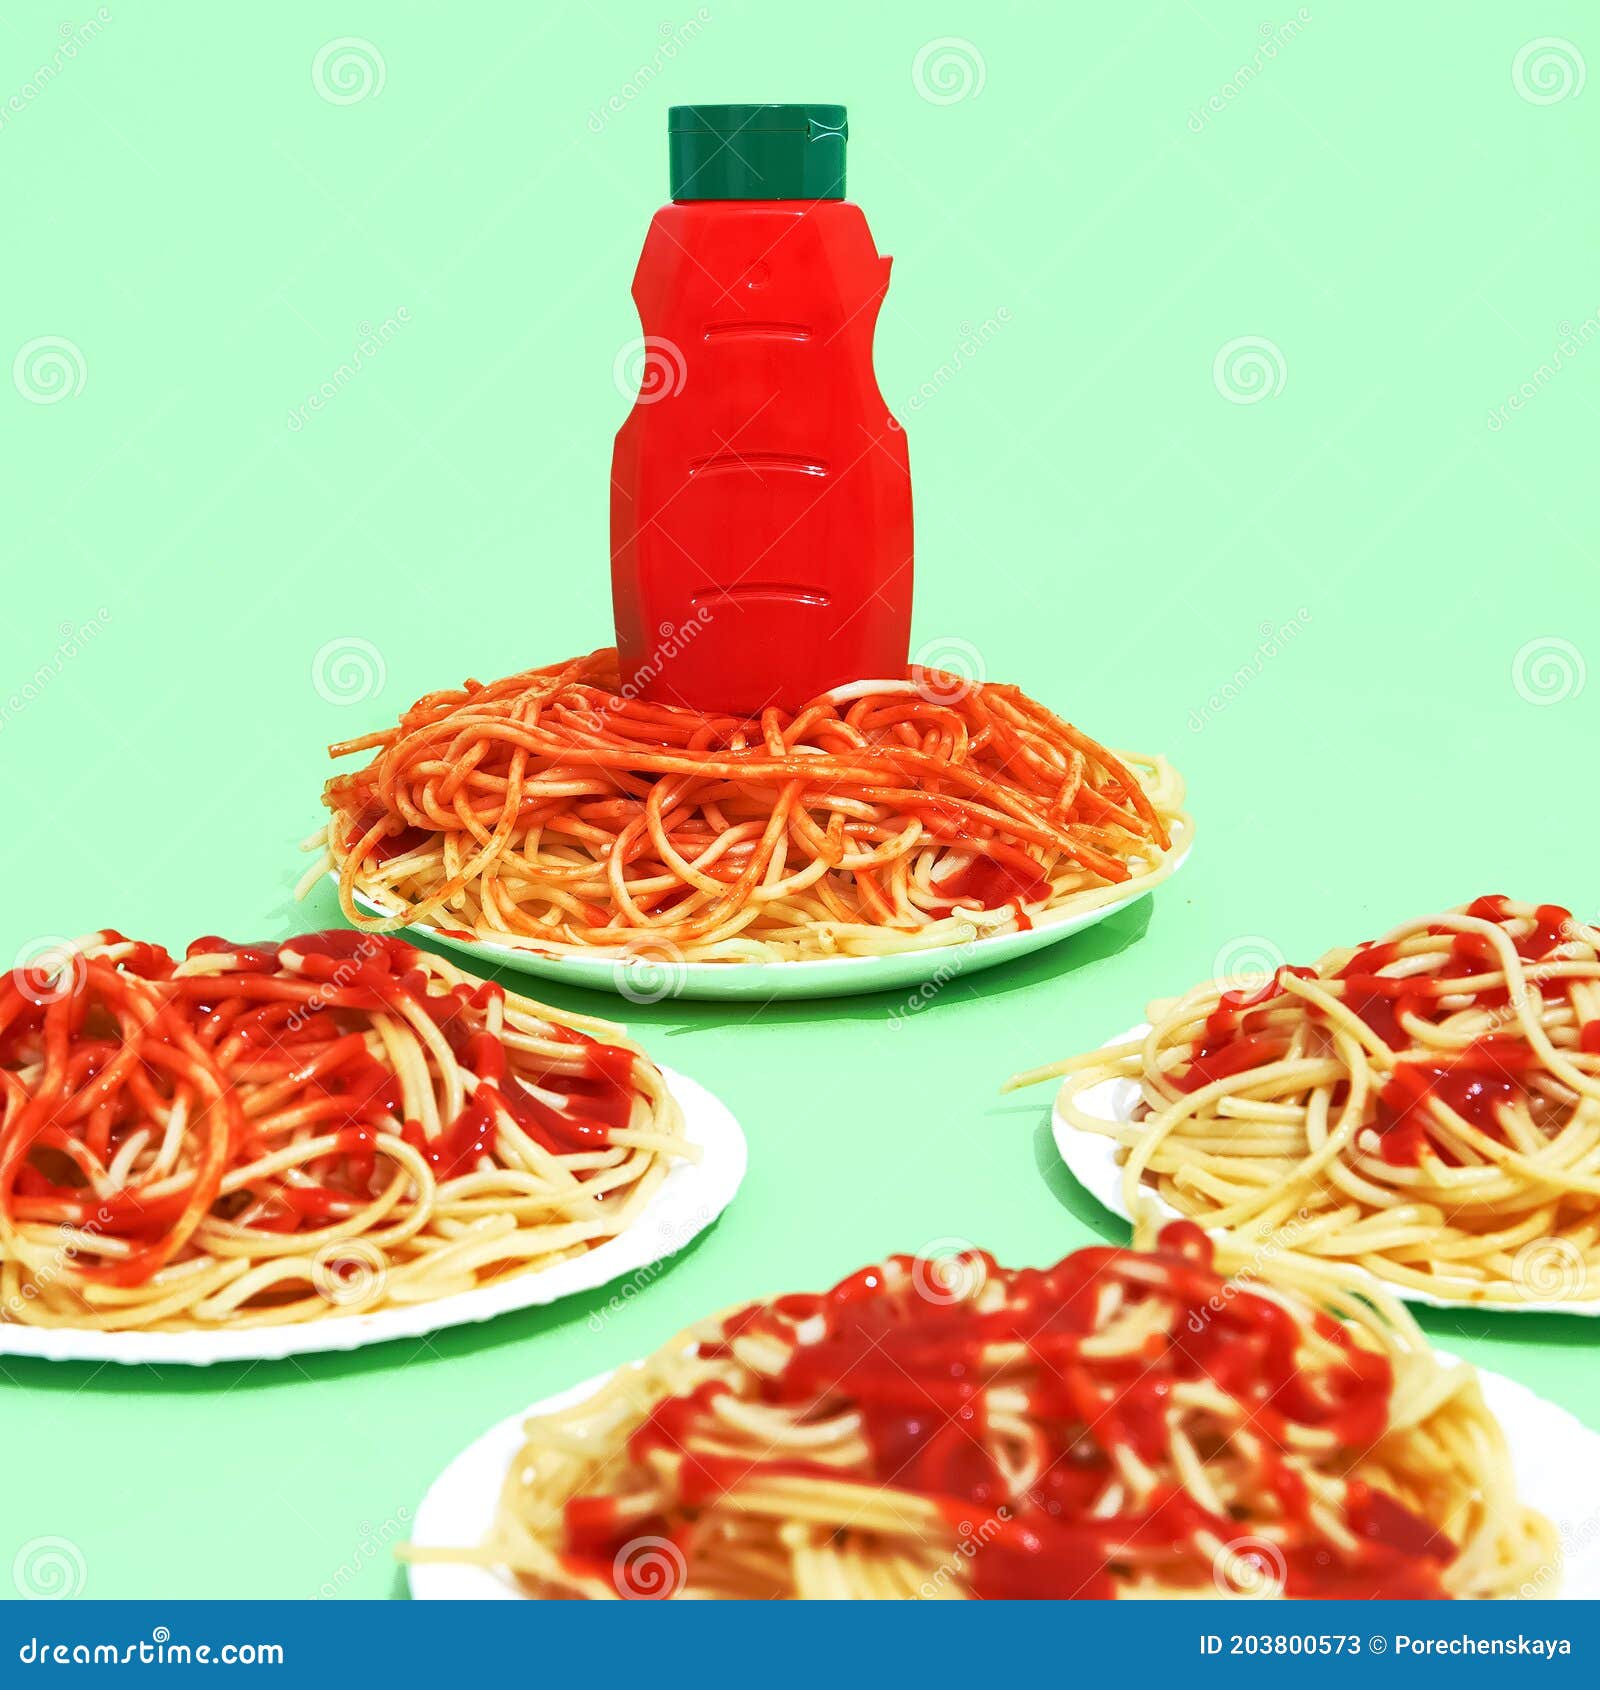 Mì ống ketchup luôn là lựa chọn yêu thích của nhiều người khi cần một bữa ăn nhanh và tiện lợi. Hình ảnh hấp dẫn liên quan đến mì ống ketchup và màu xanh lá cây iso sẽ khiến bạn cảm thấy ngon miệng và vui vẻ.